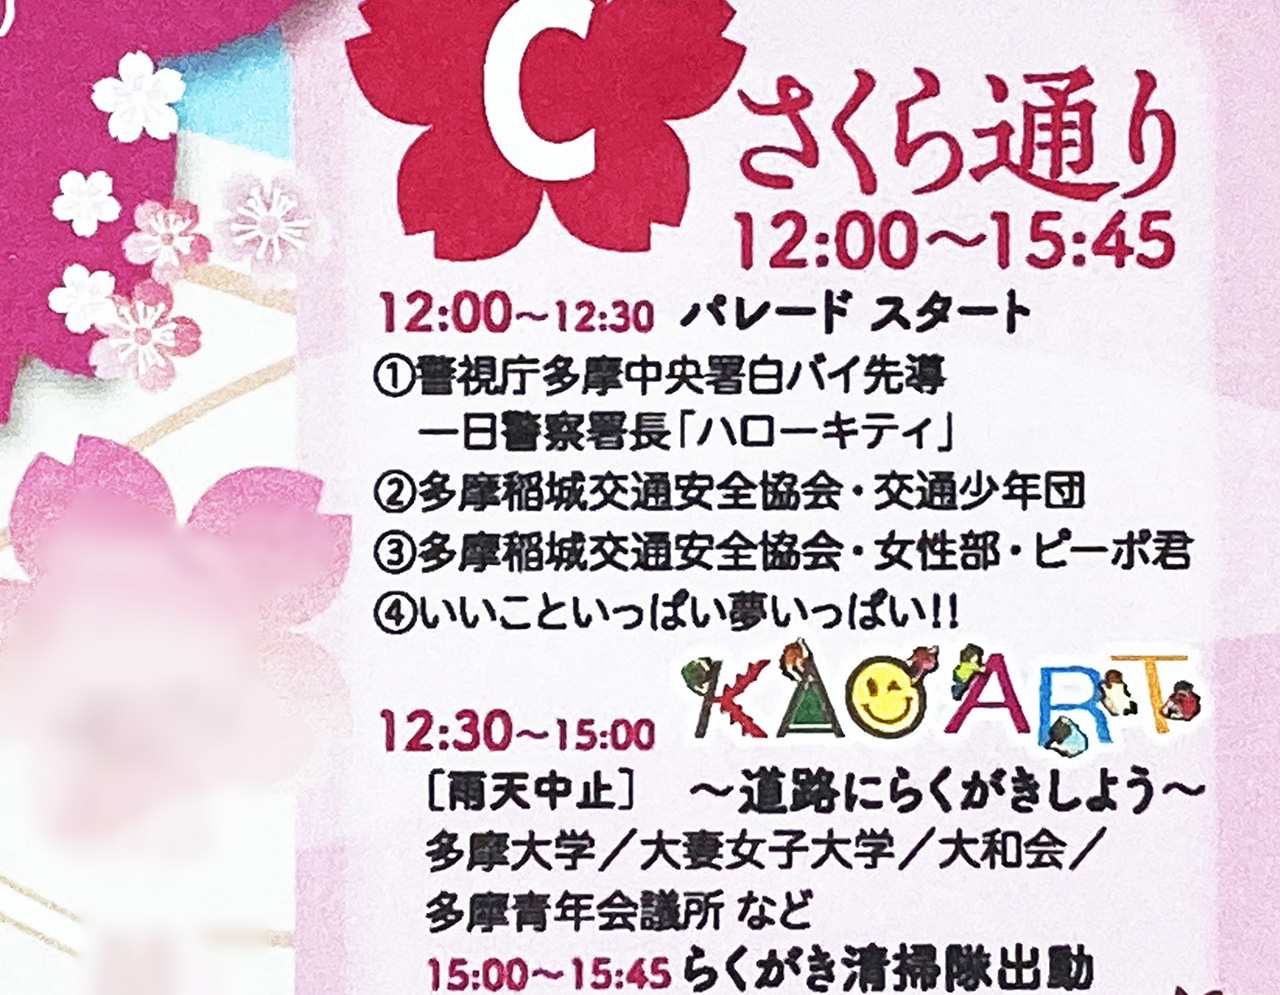 「第42回せいせき桜まつり」が4月2日に開催